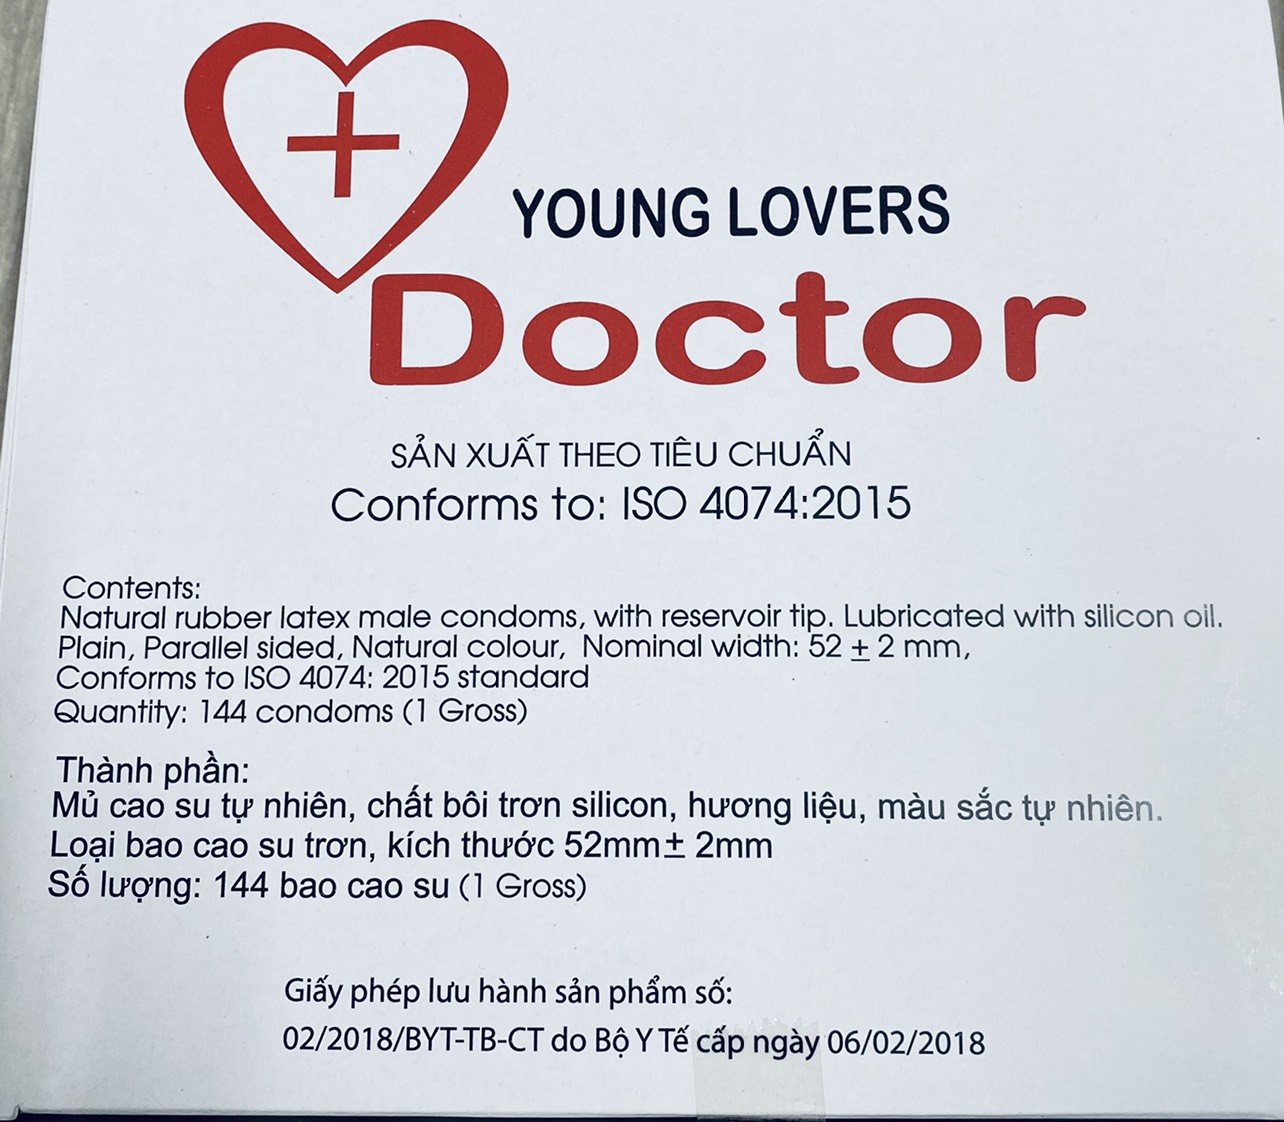 Bao cao su Young Lovers Doctor